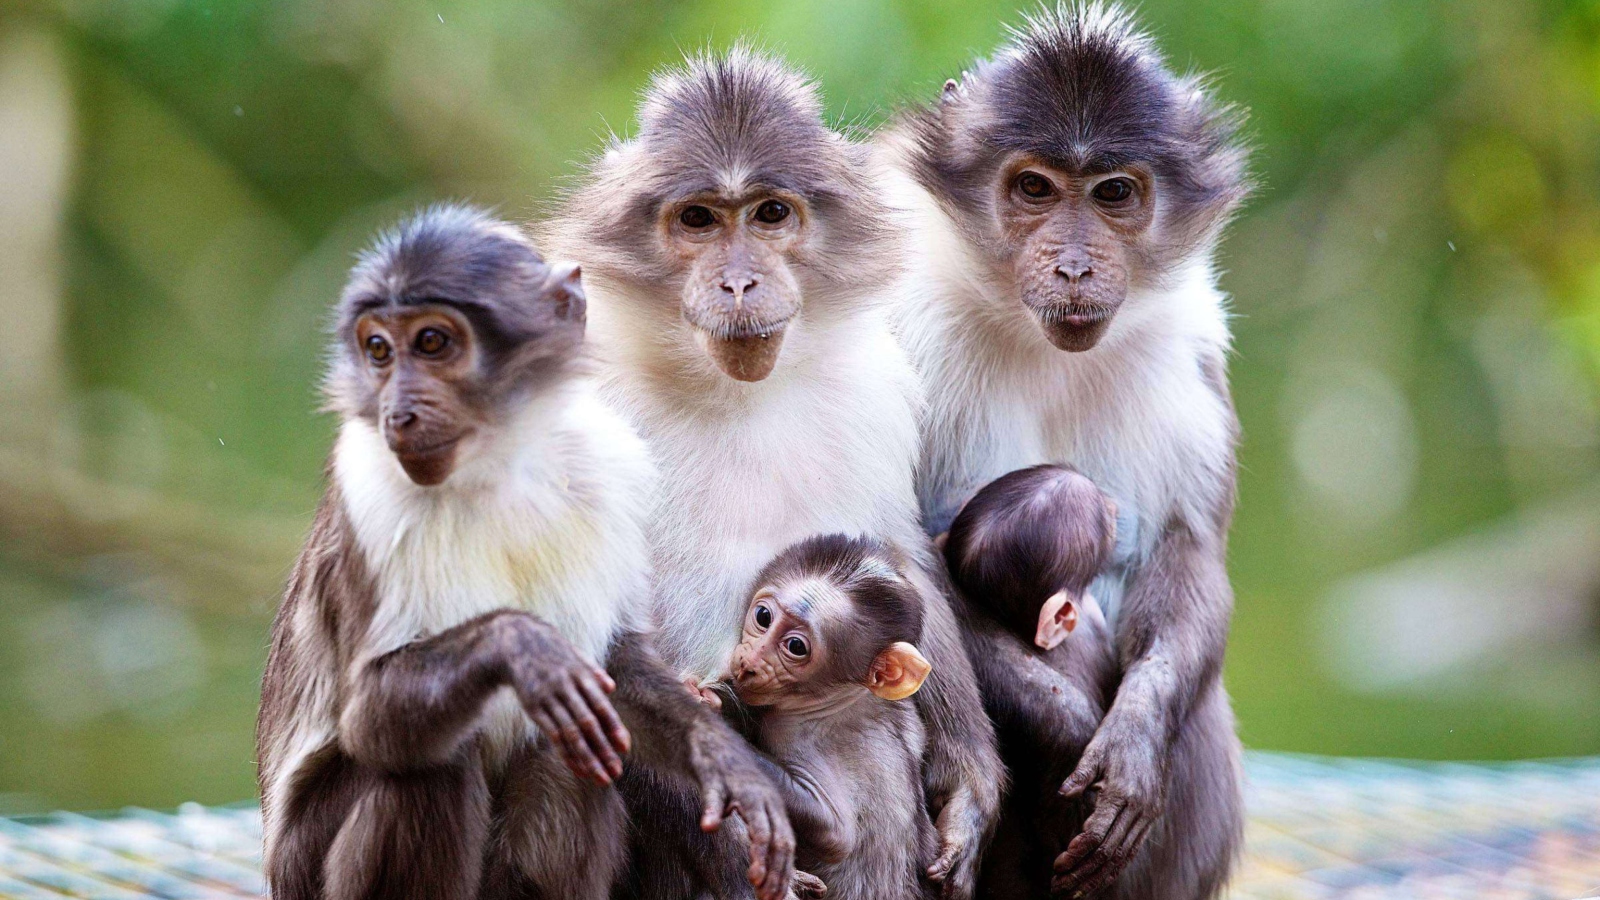 Обои Funny Monkeys With Their Babies 1600x900